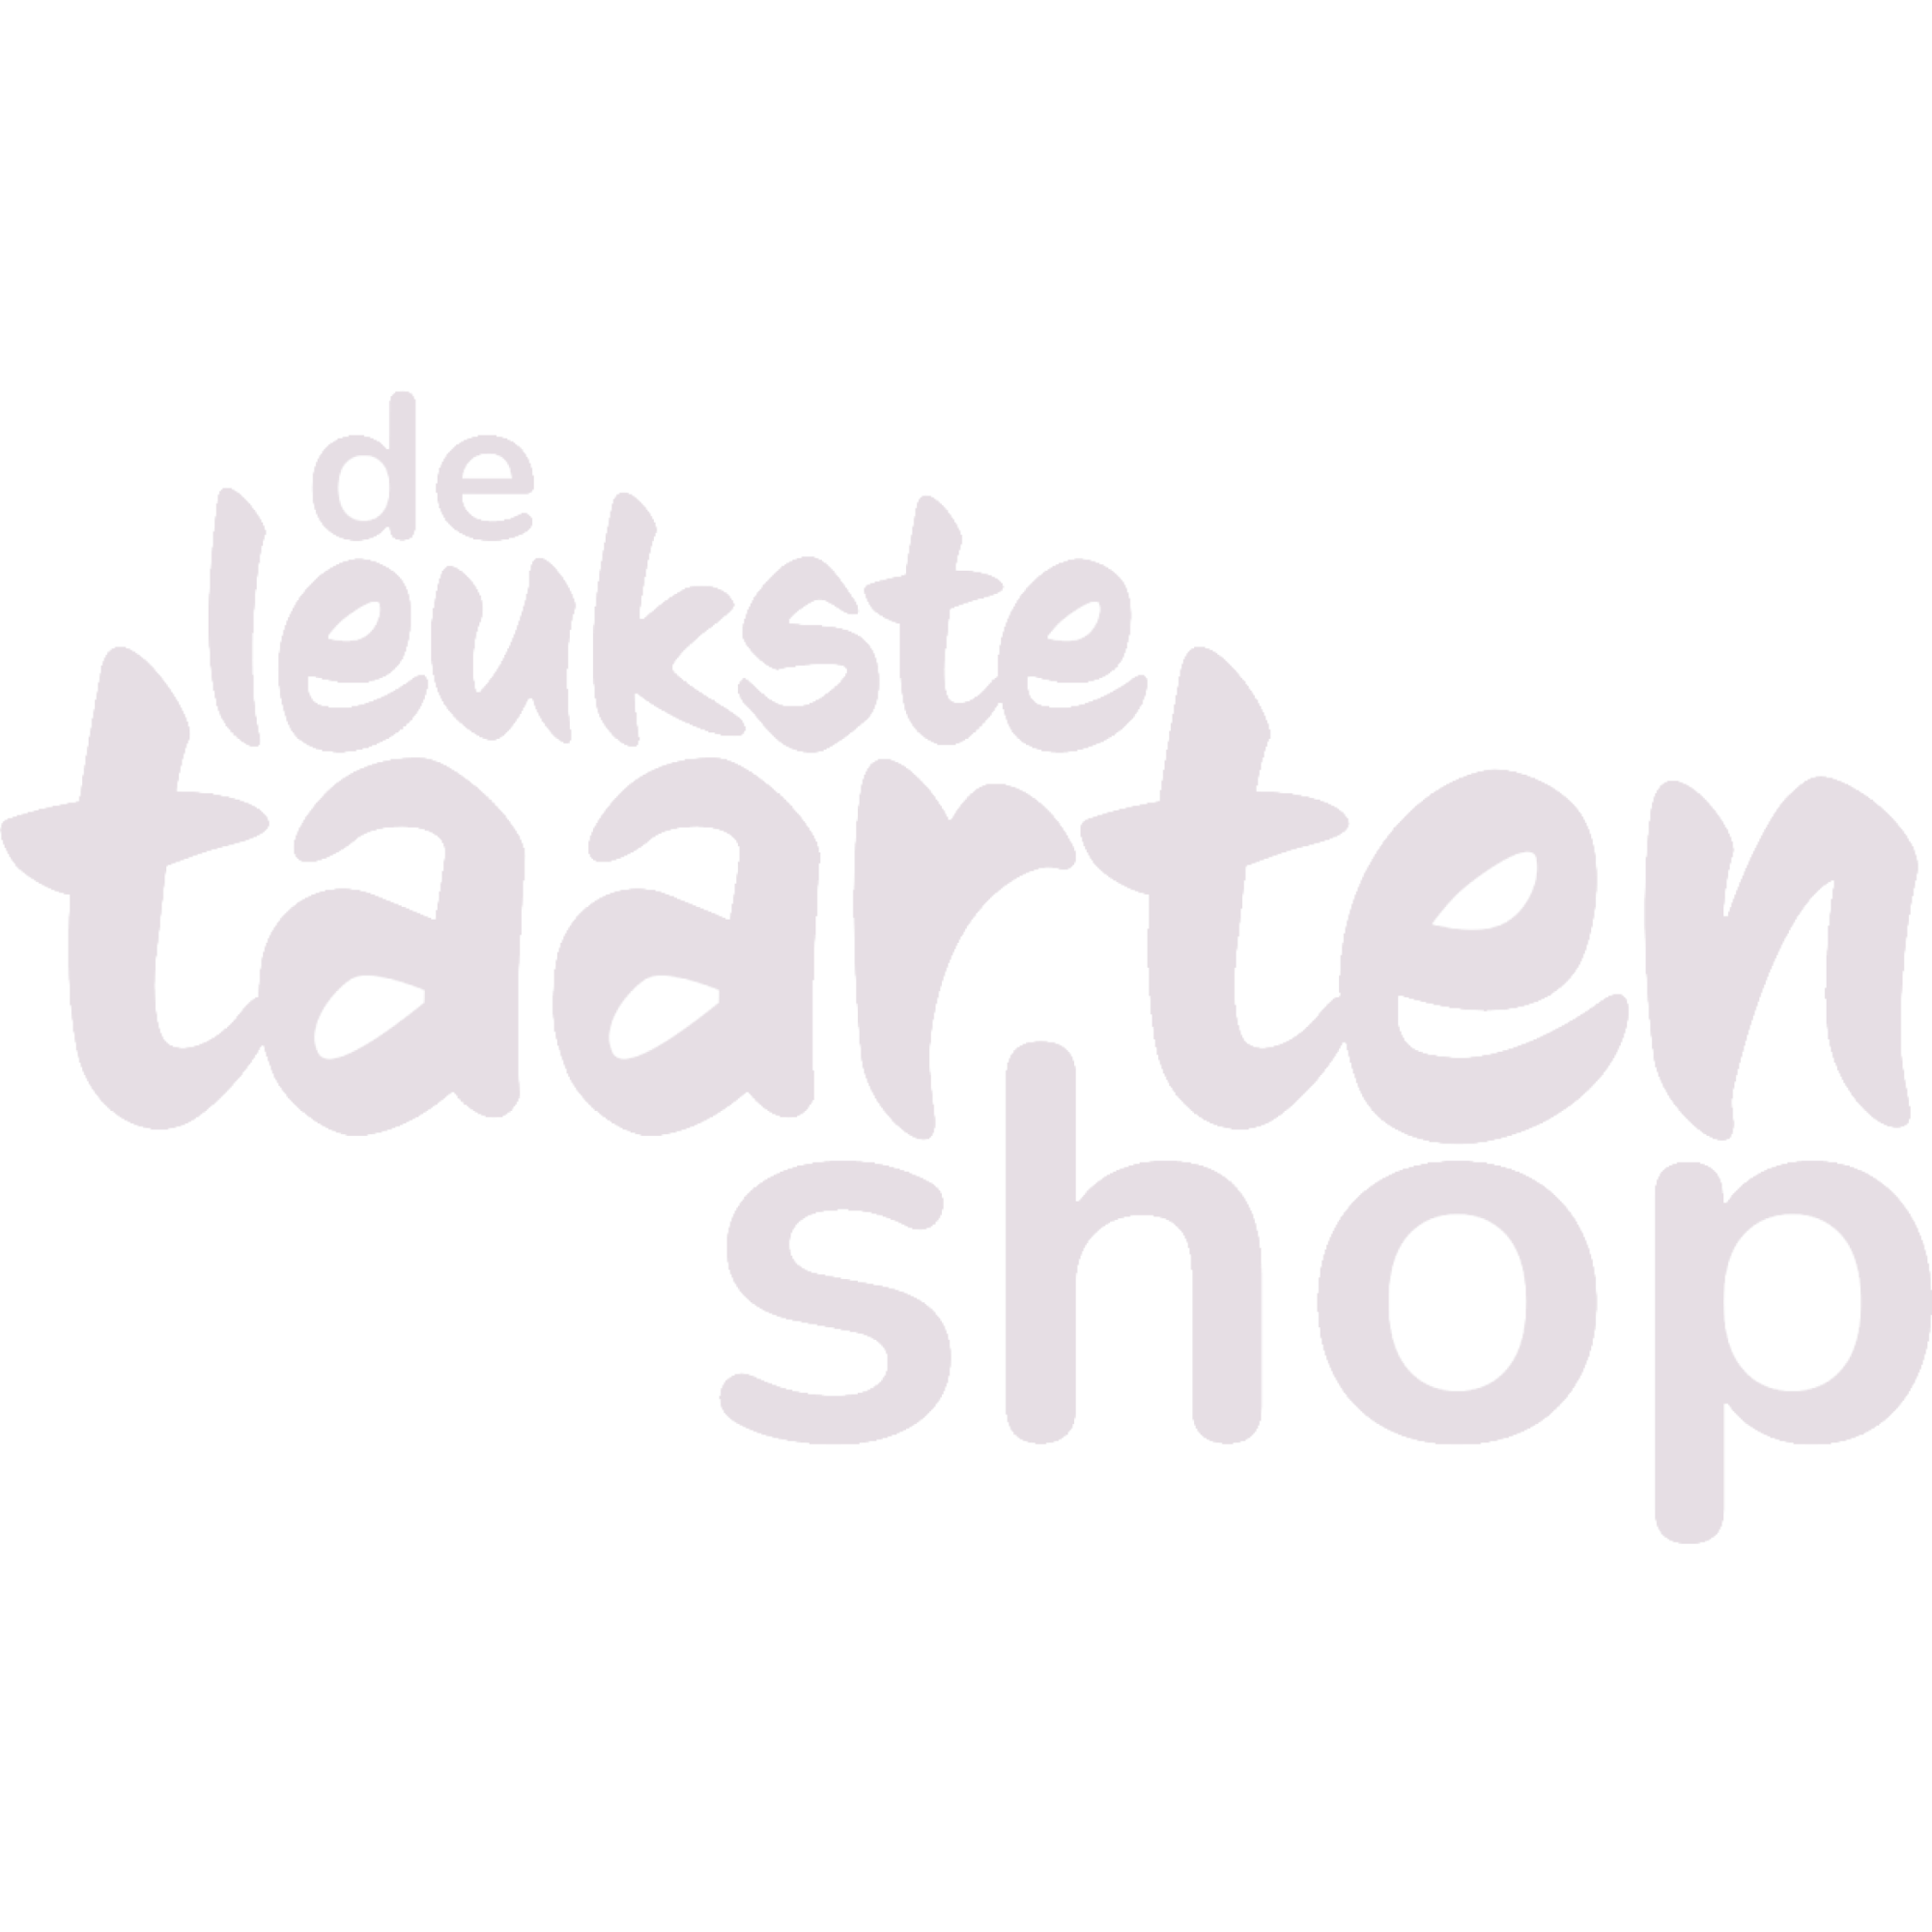 Uitgelezene Recept: Mini taartjes | Deleukstetaartenshop.nl OR-87